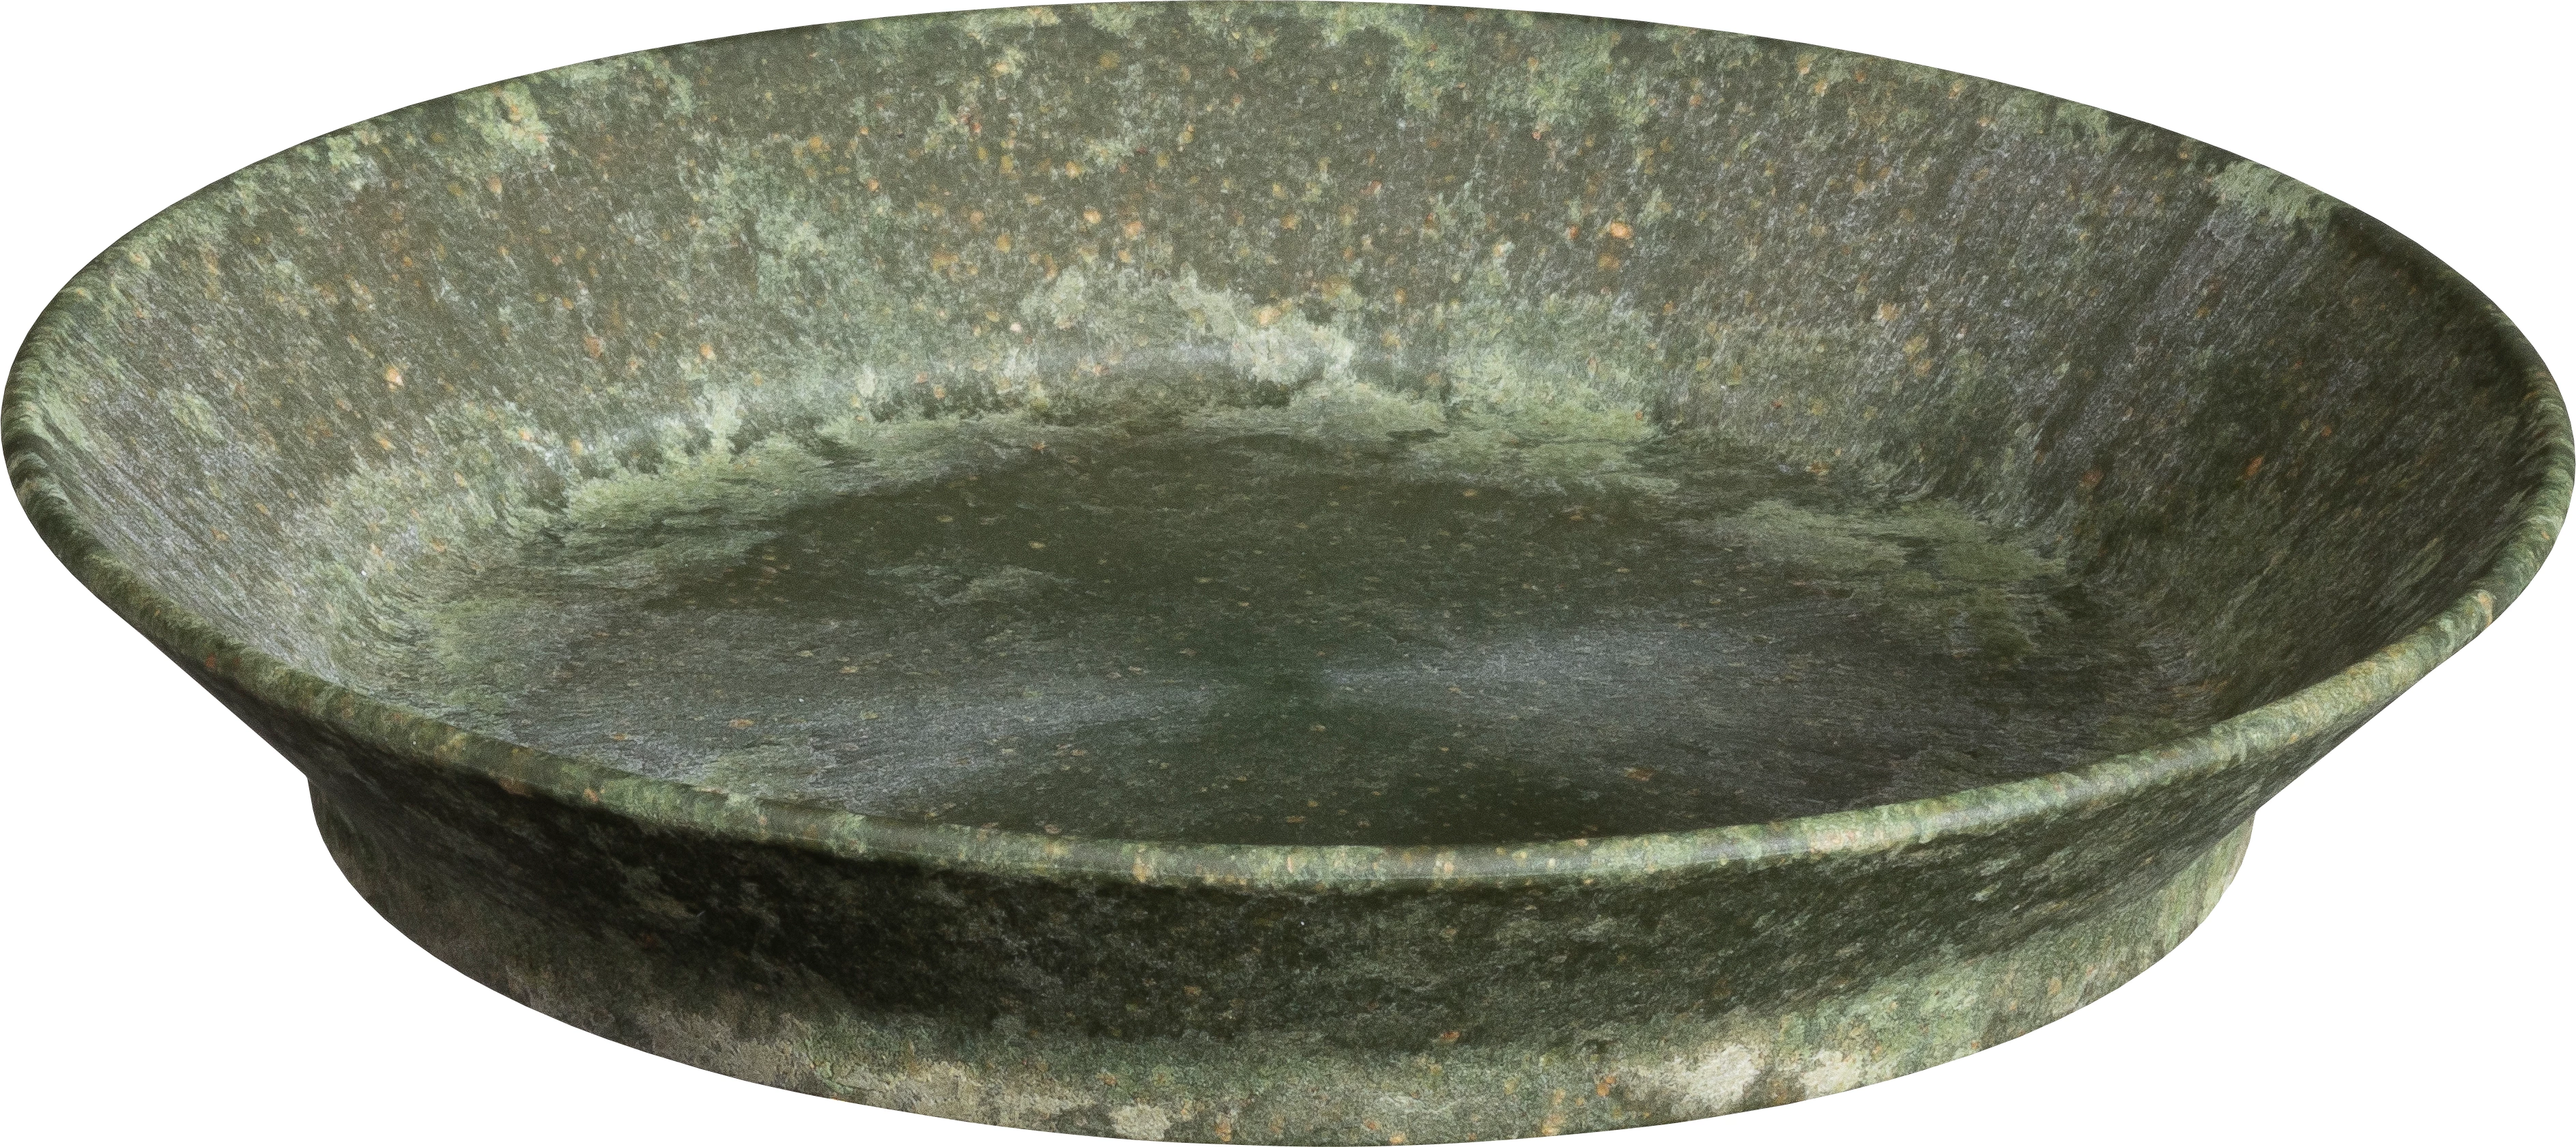 Luups tallerken uden fane, grøn, ø18 cm